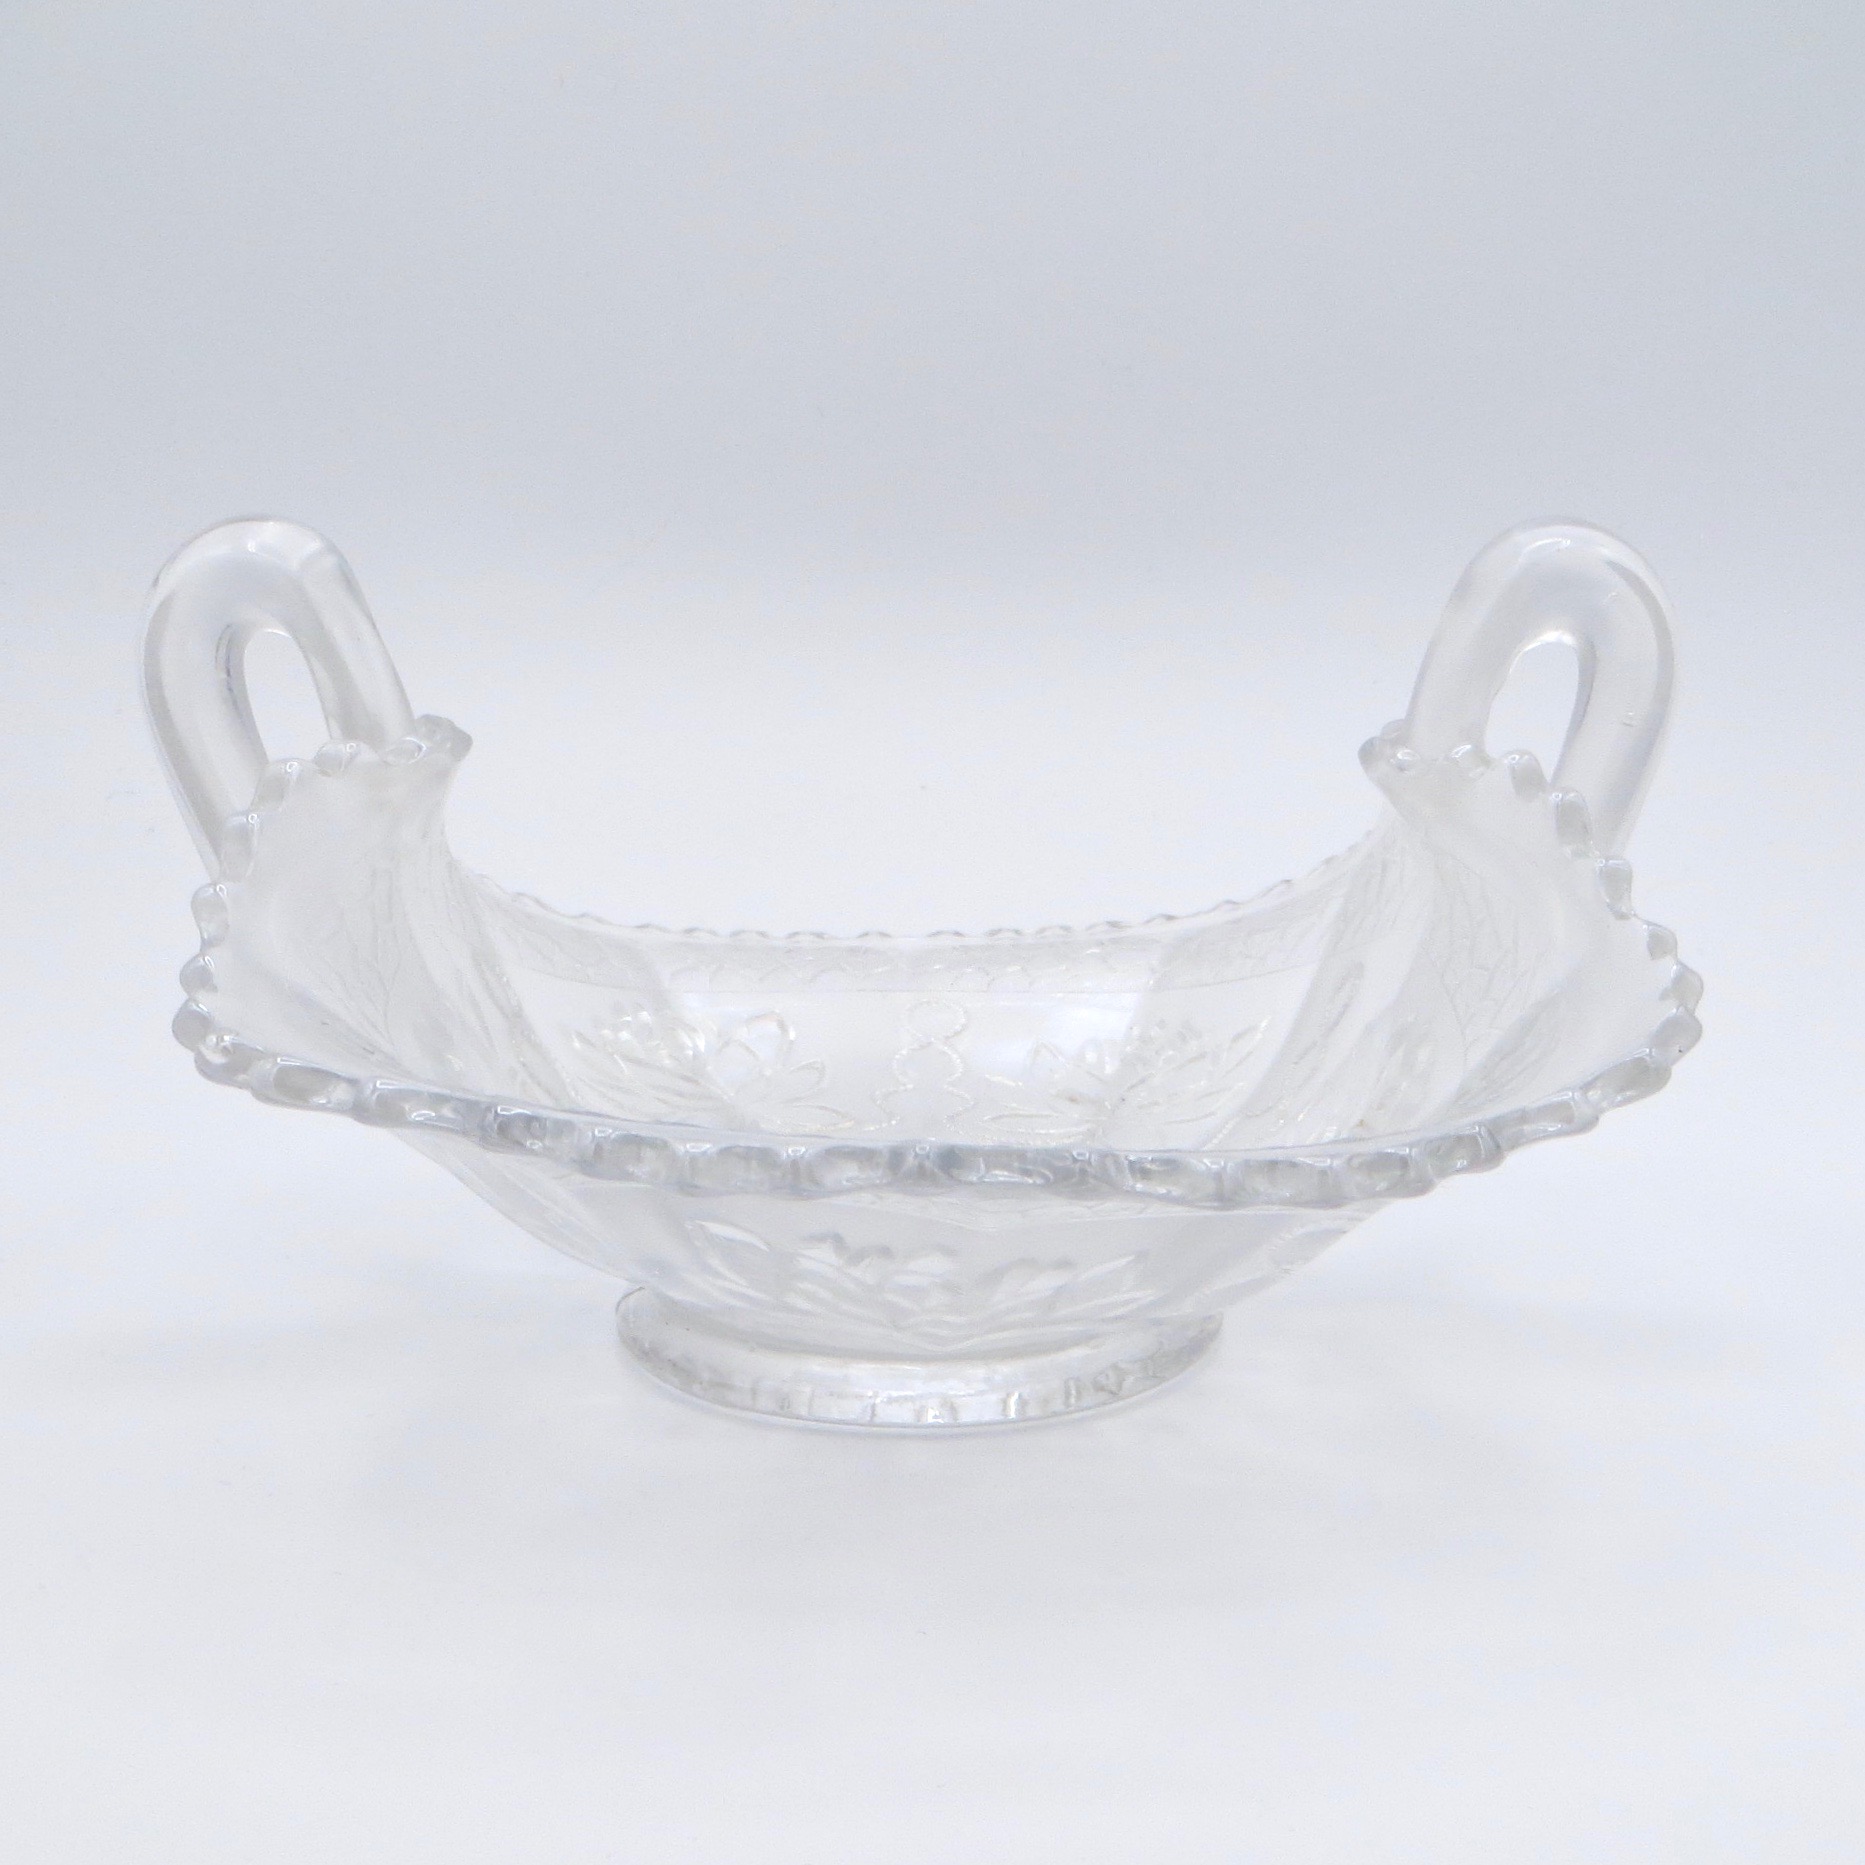 Rare White Carnival Glass Dish